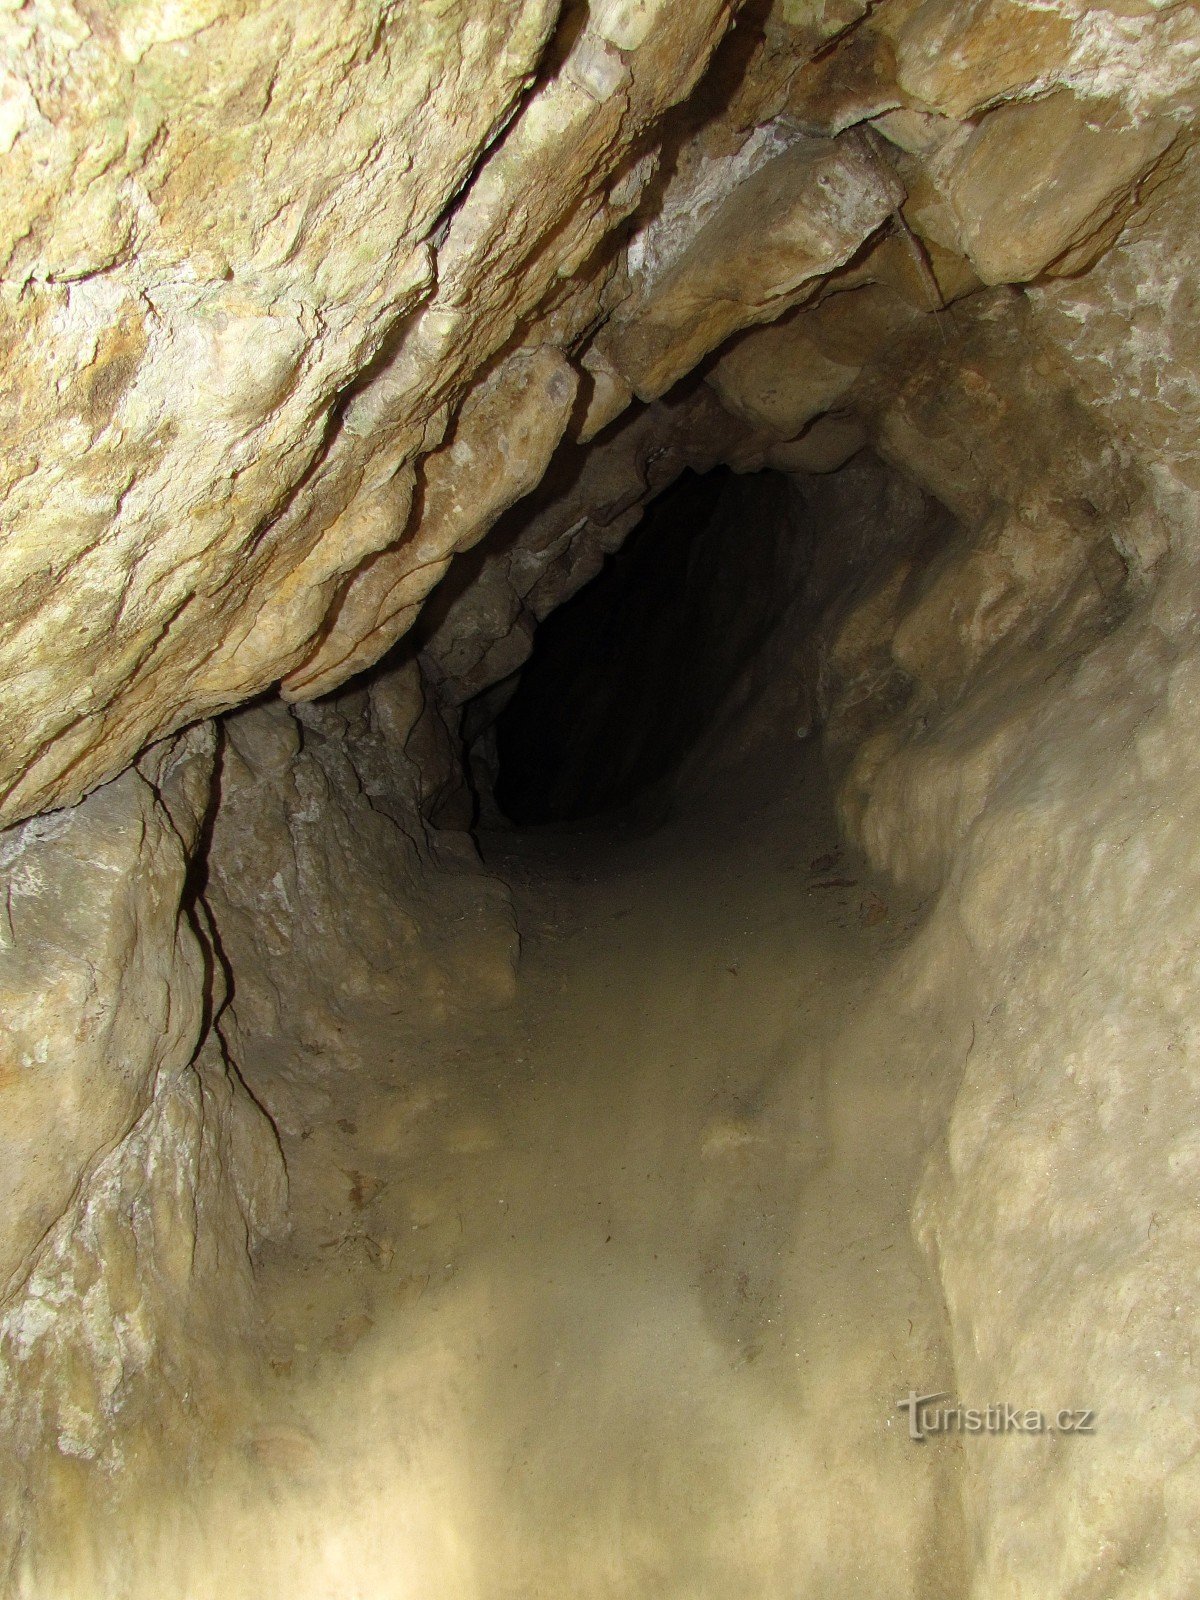 Bag hemmeligheden bag Čecher - en pseudokarst-hule